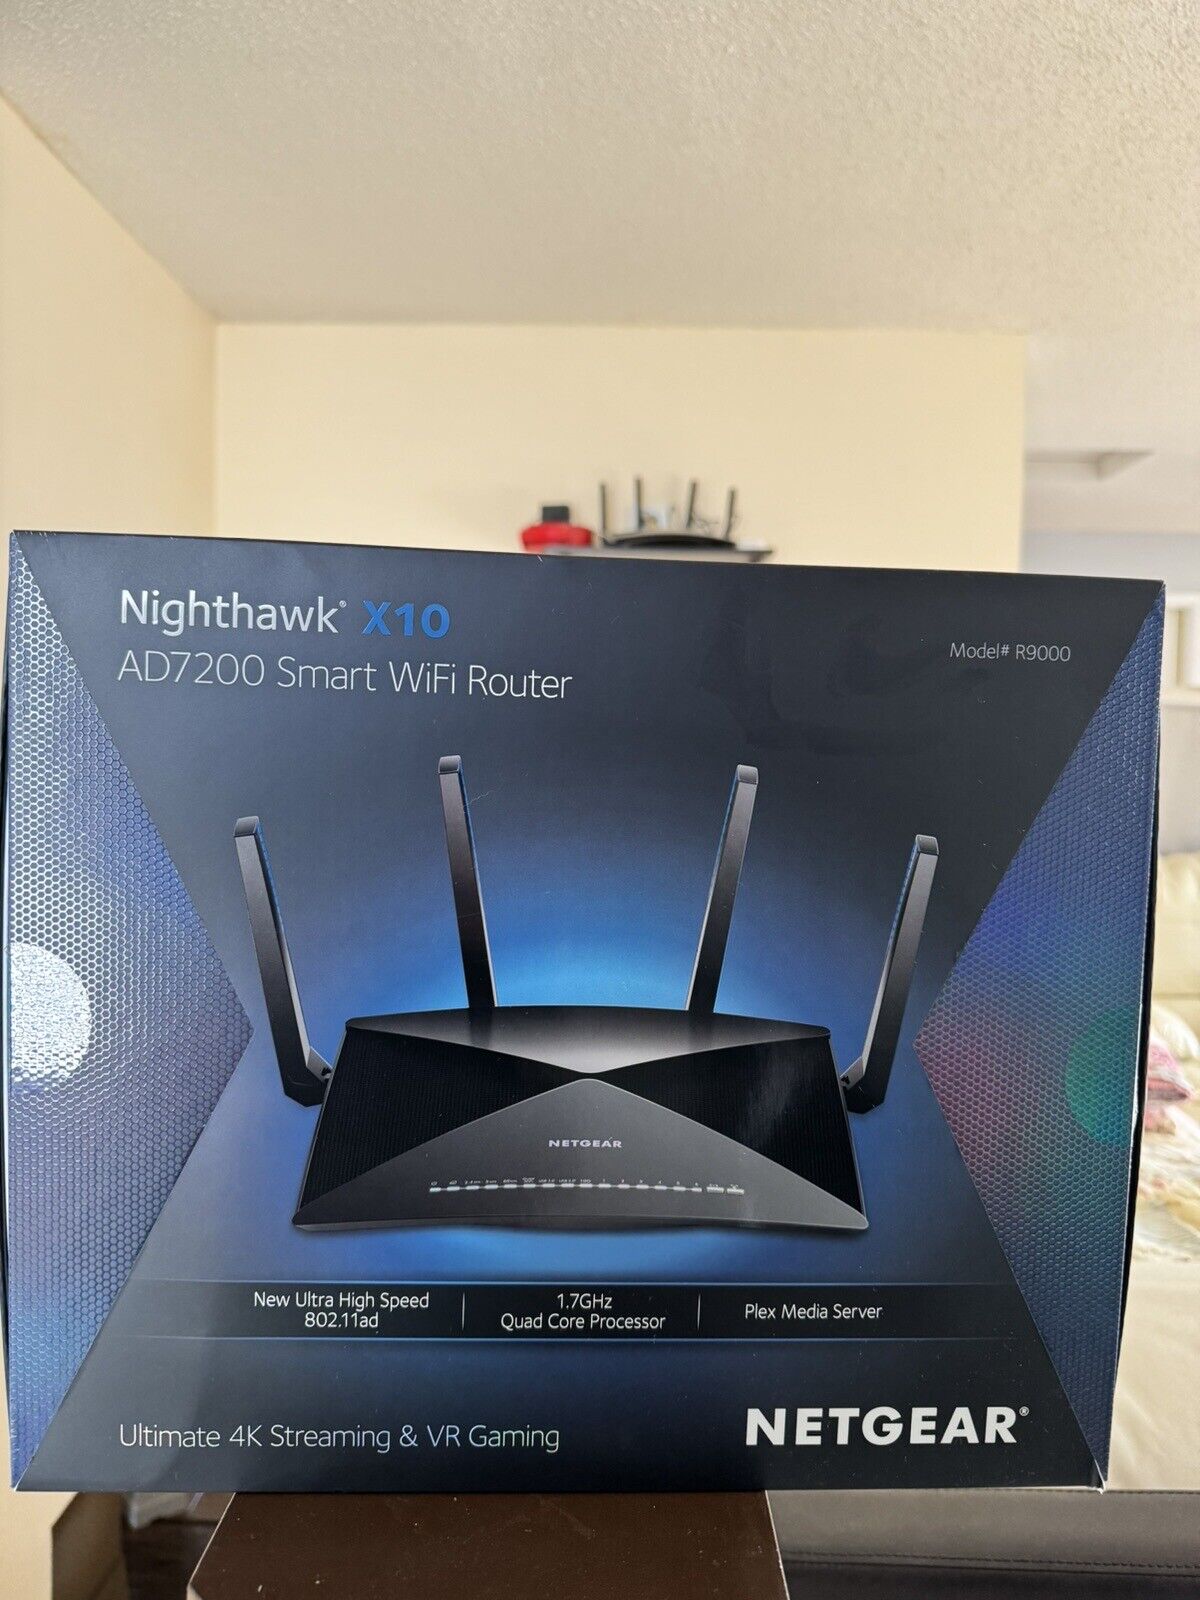 NETGEAR Nighthawk X10 AD7200 Tri-Band Wi-Fi Router - Black R9000-100NAS